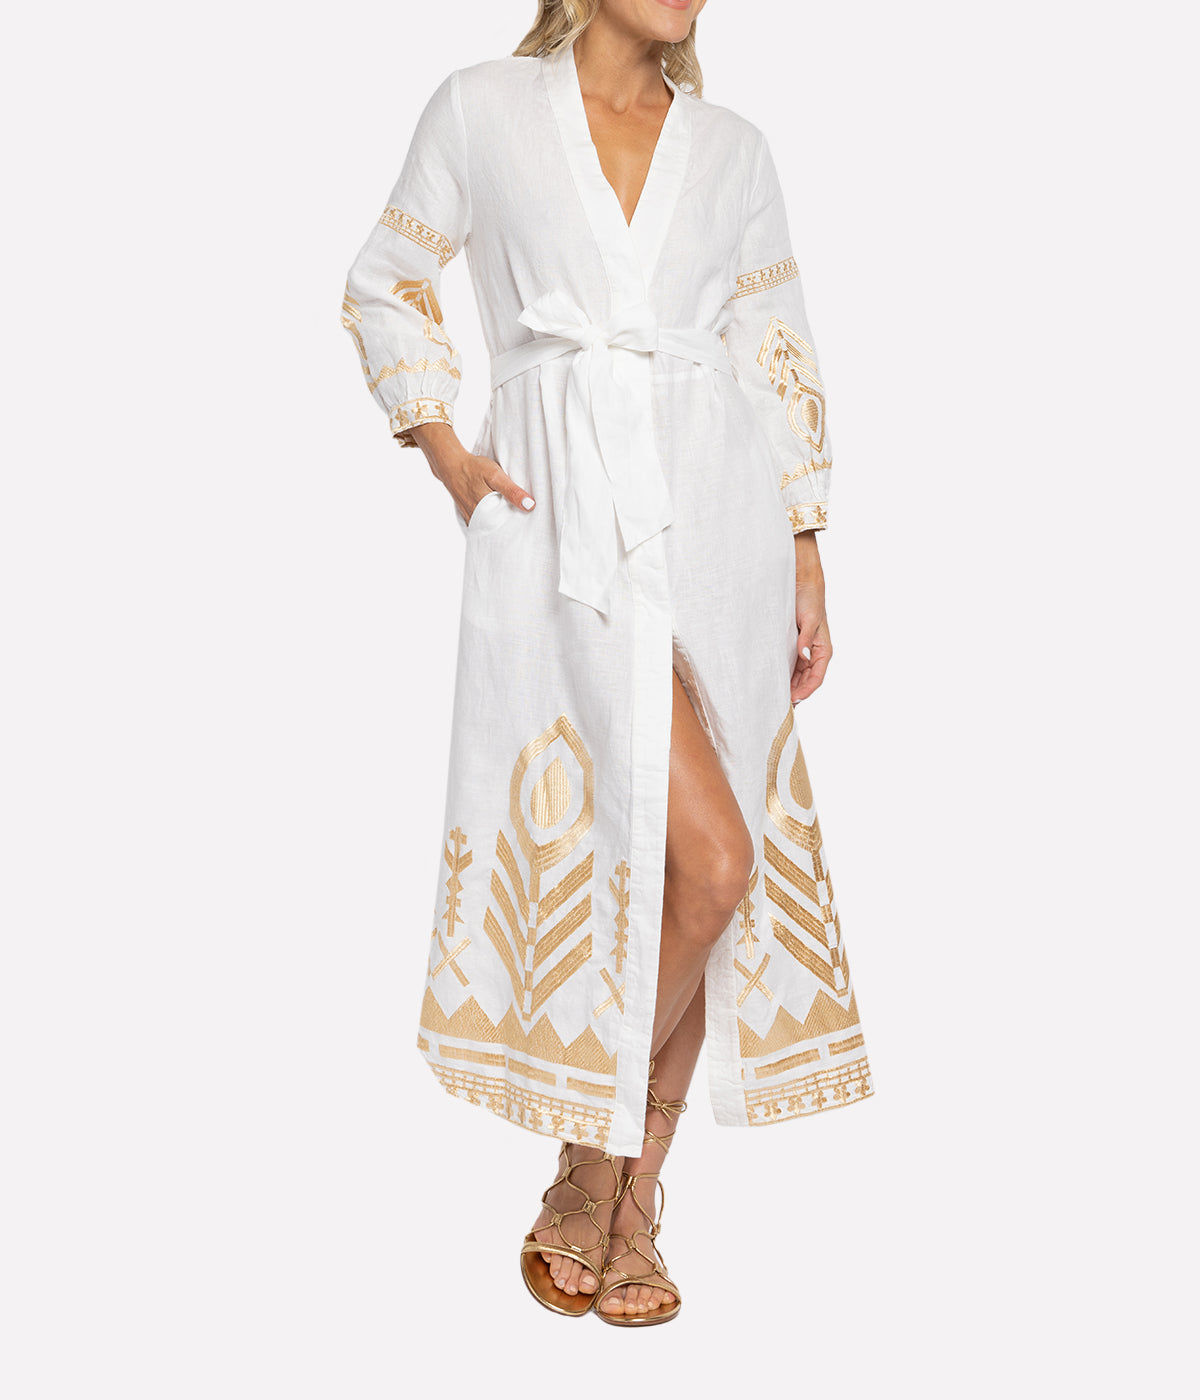 Mykonos Long Sleeve Dress in White & Gold